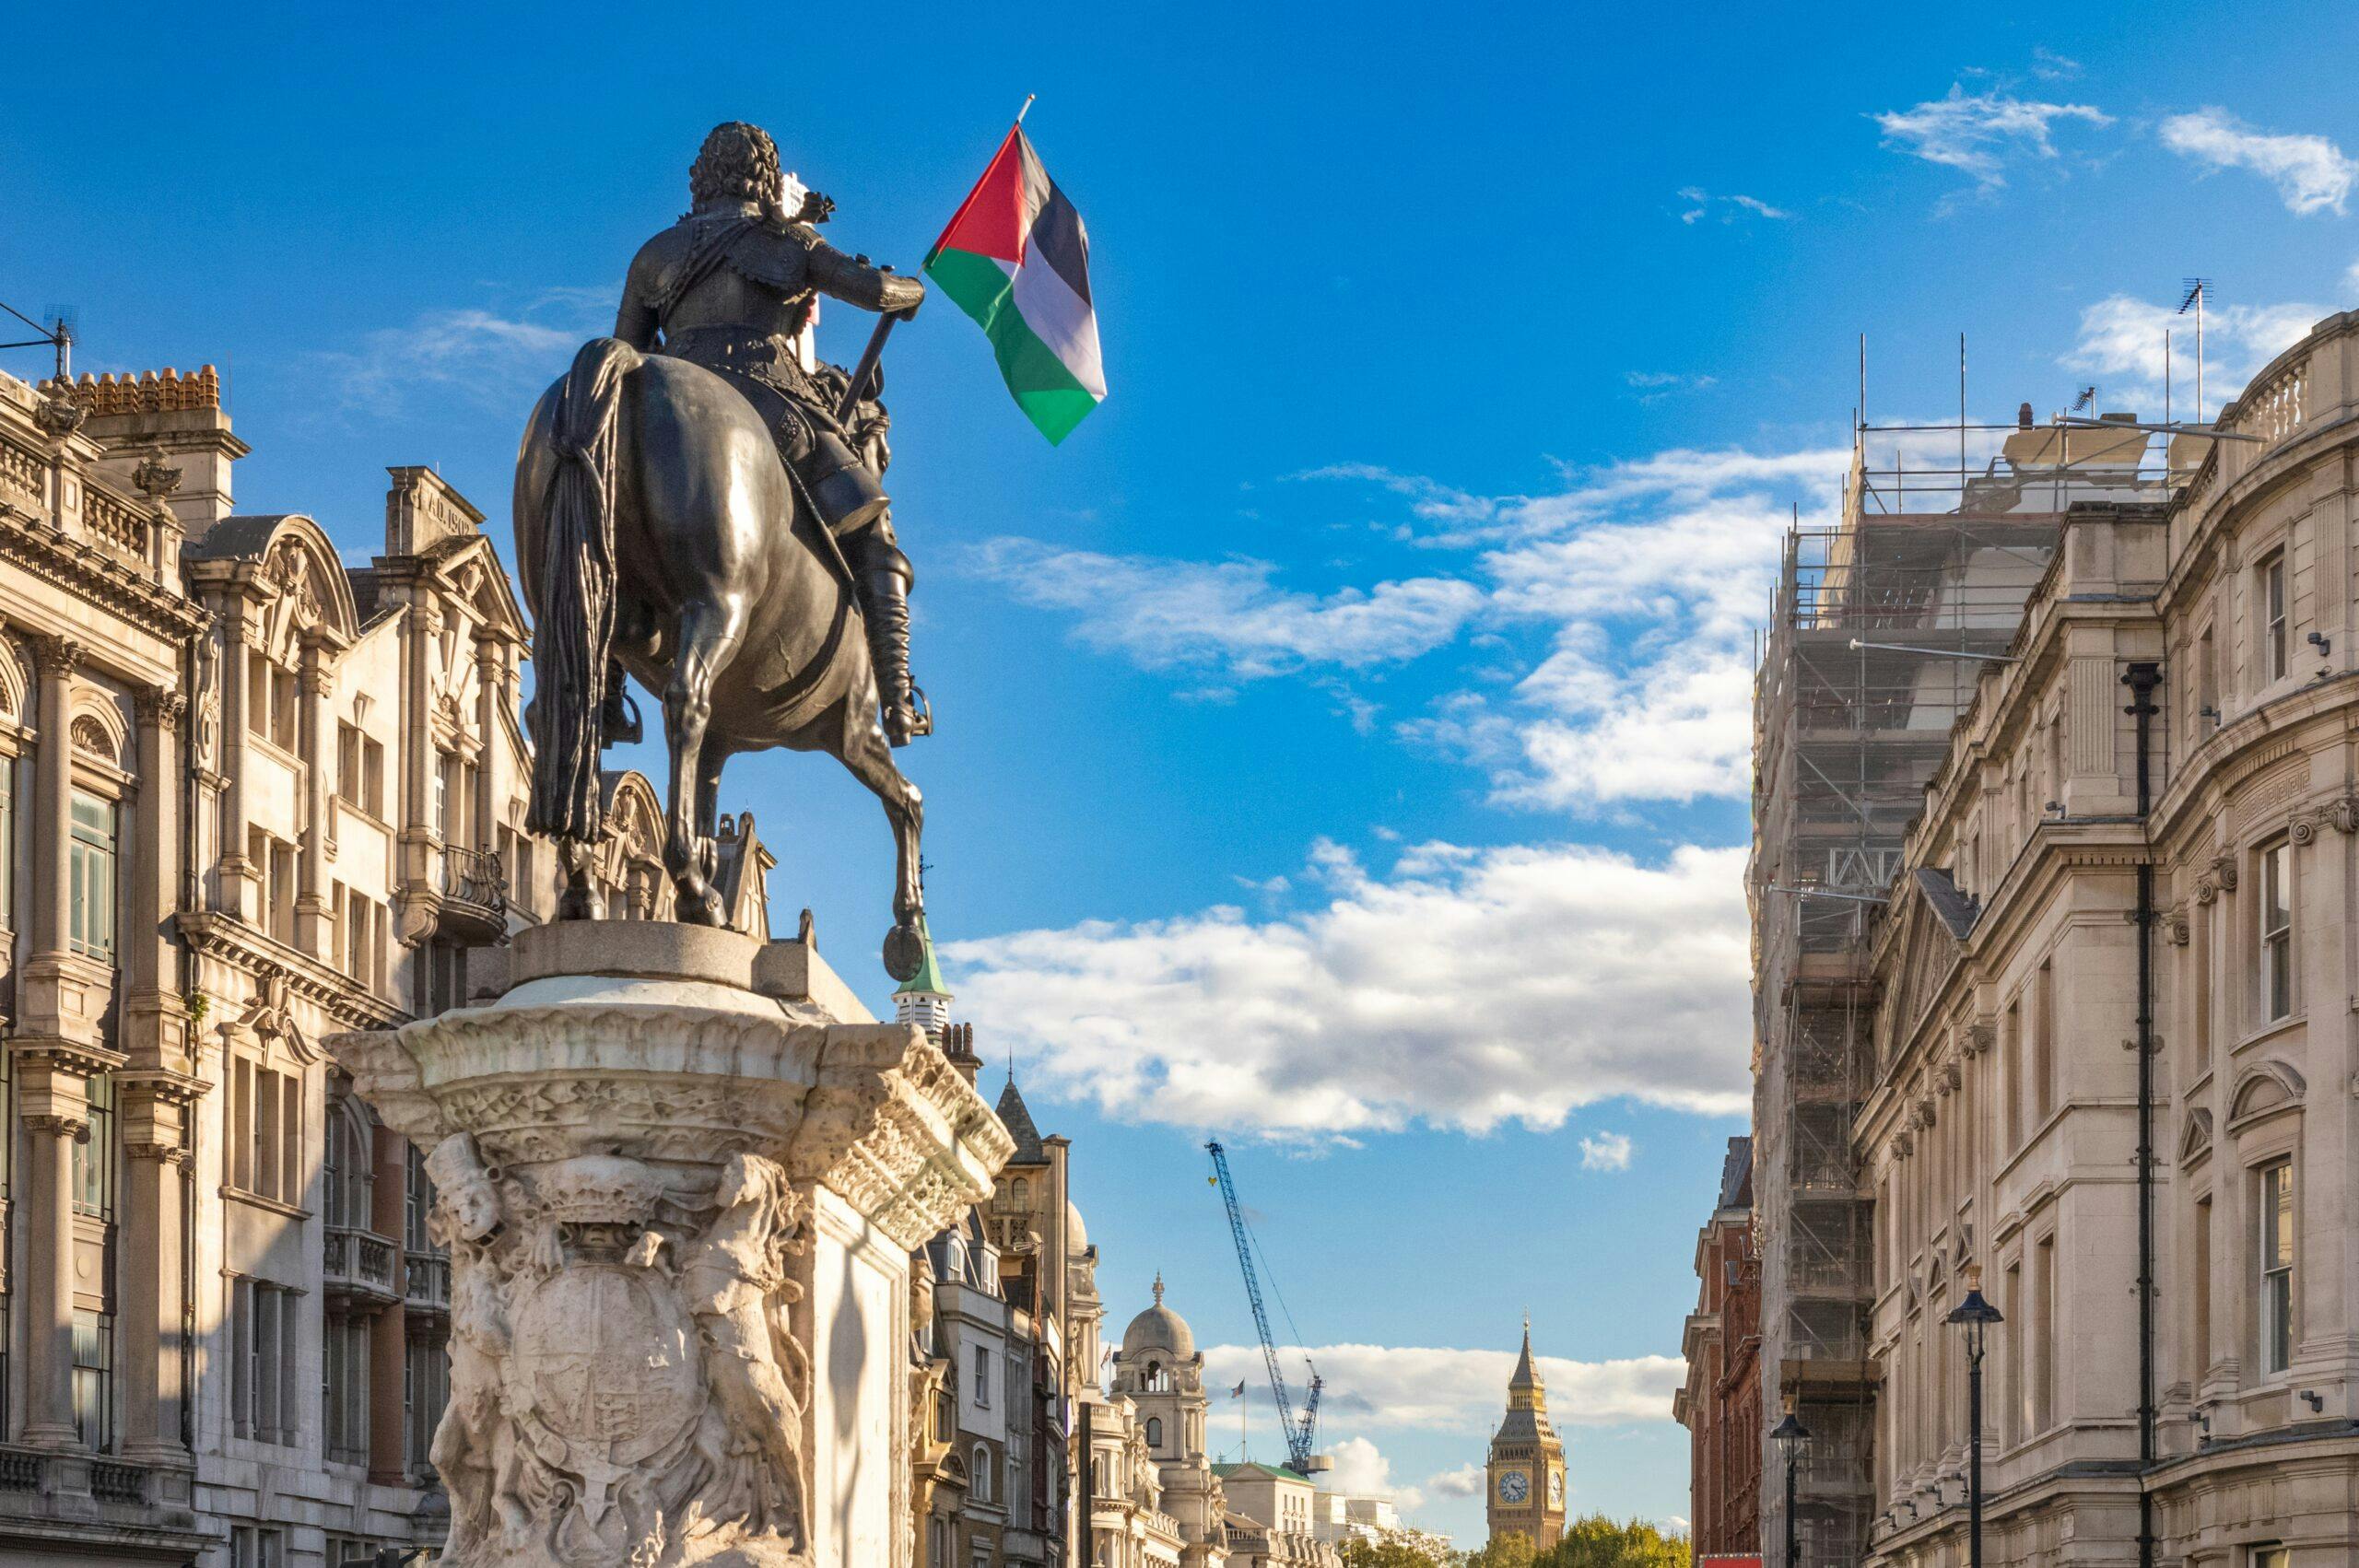 پرچم فلسطین بر فراز مجسمه یک گرند دوک در لندن، پایتخت بریتانیا. انگار استعمارگر توانسته باشد نماد صلحی برابر بشود.